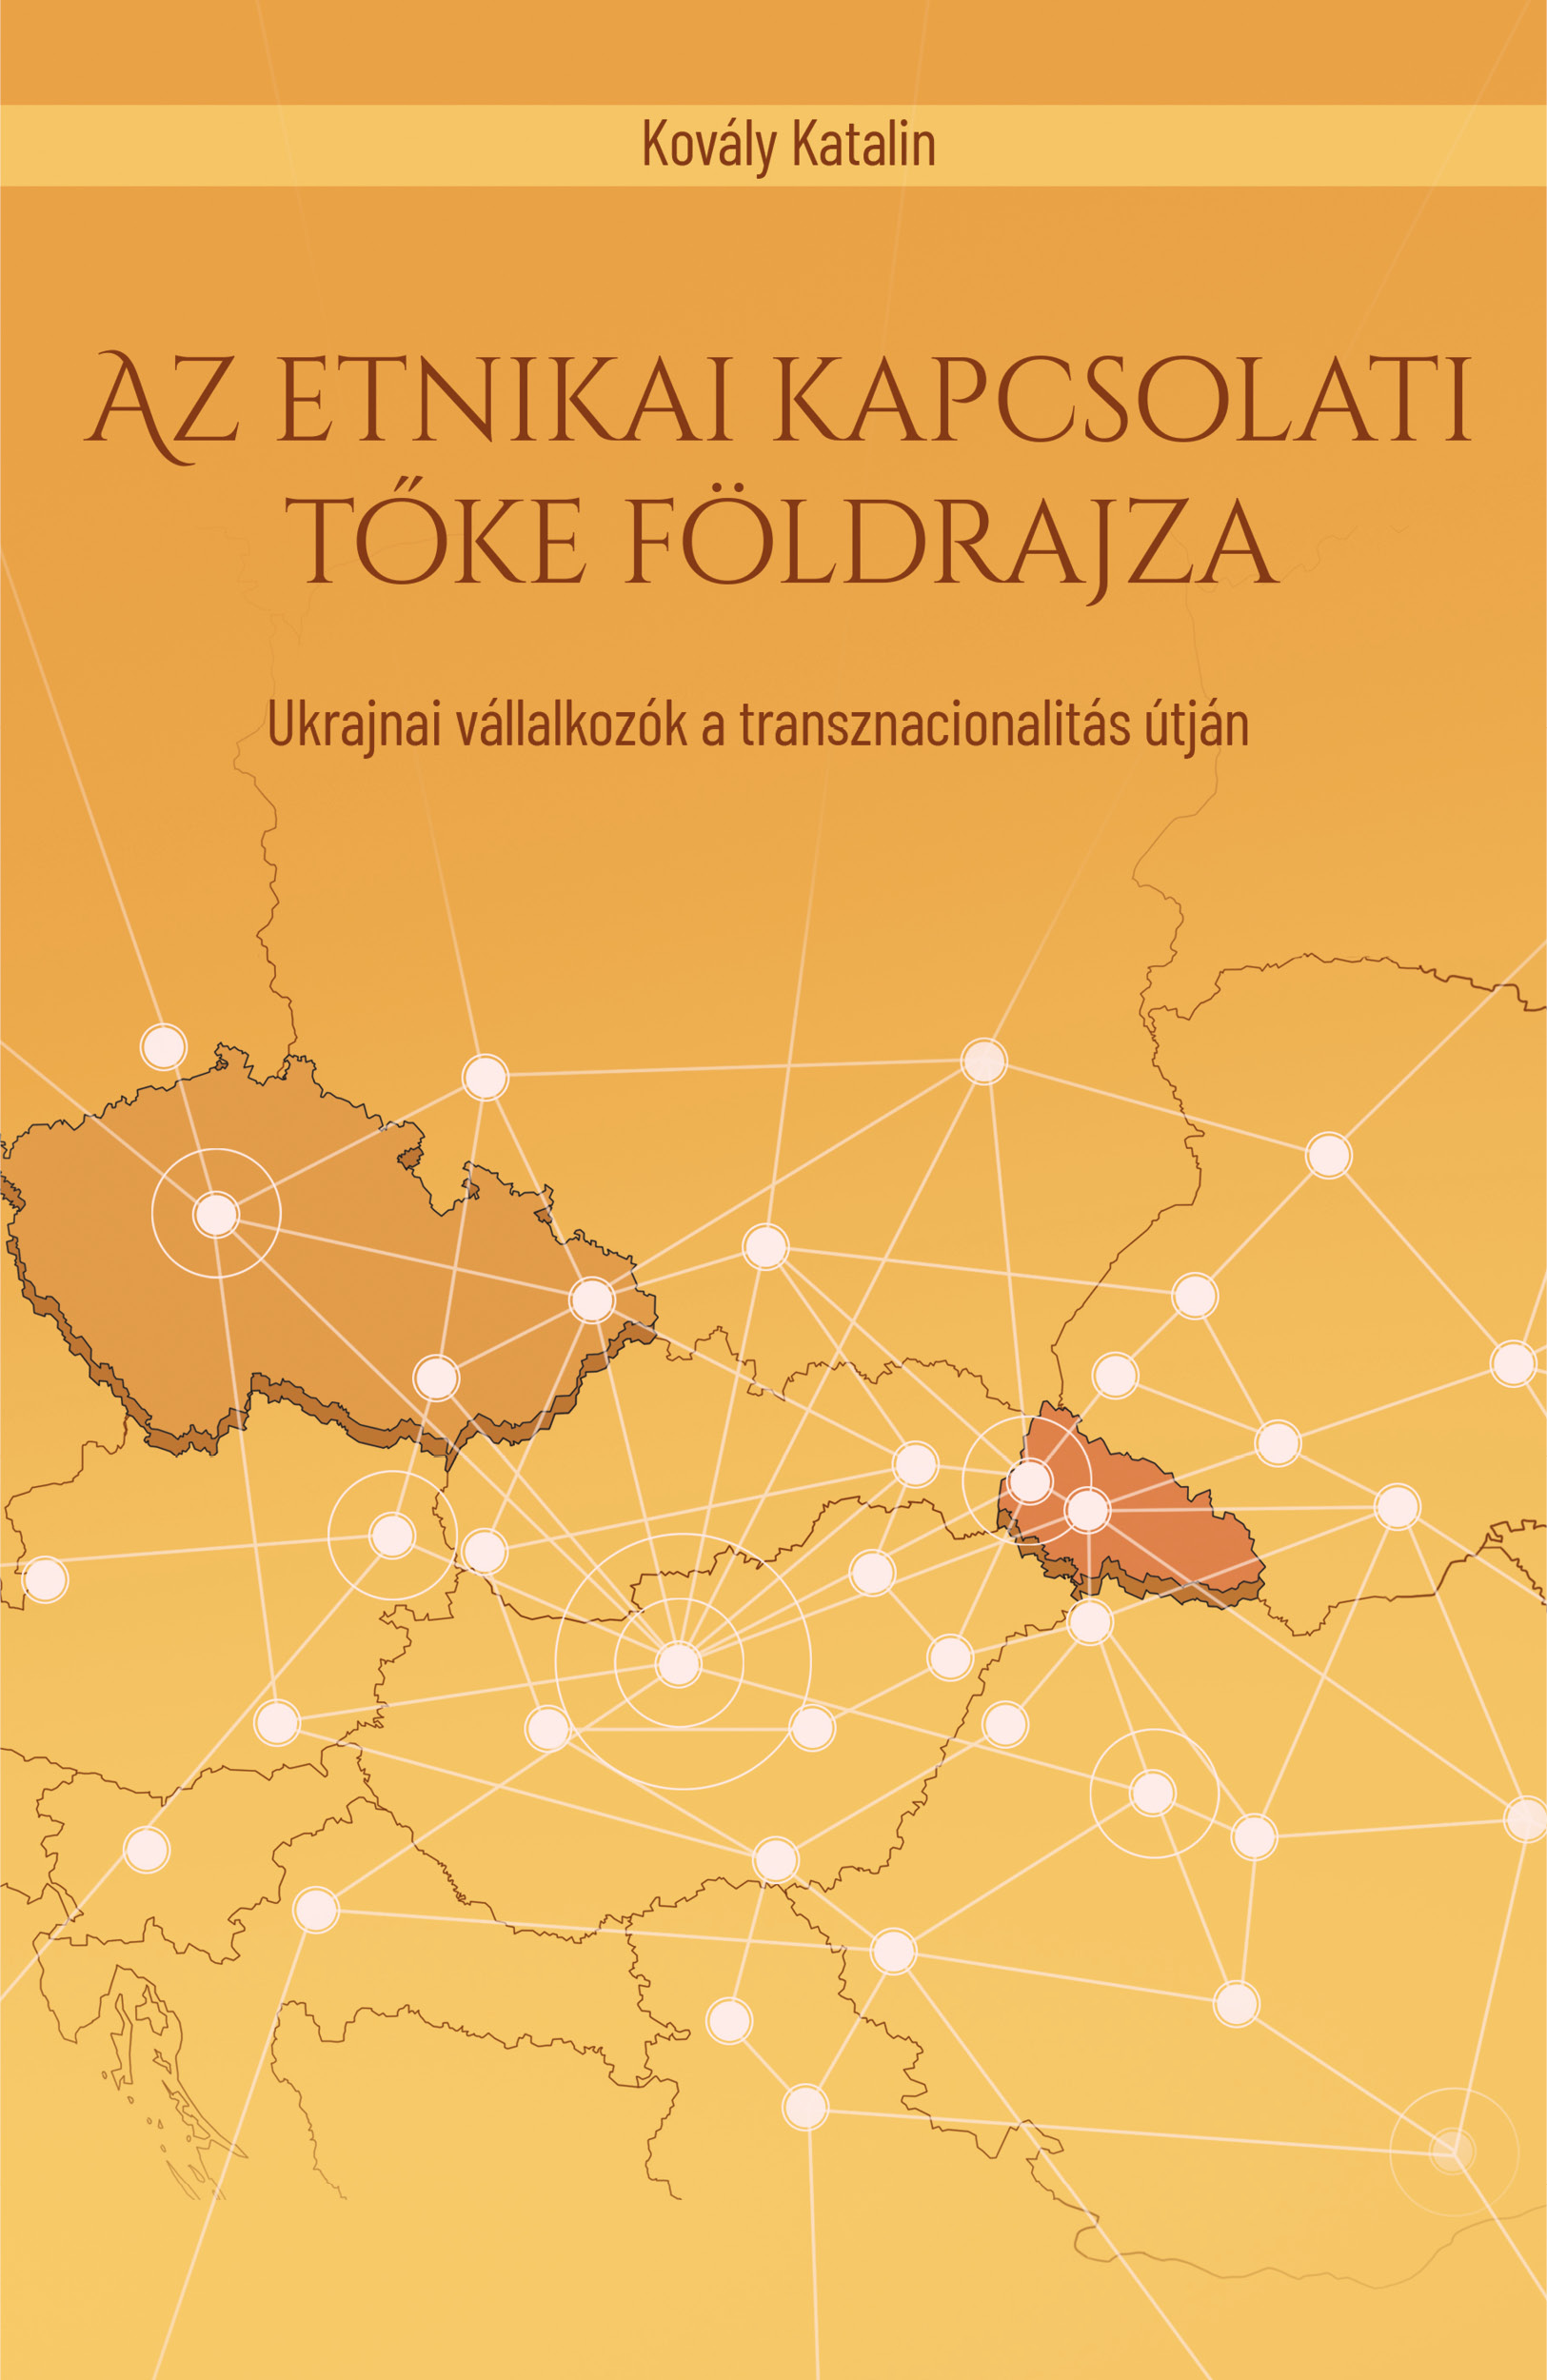 Az etnikai kapcsolati tőke földrajza. Ukrajnai vállalkozók a transznacionalitás útján